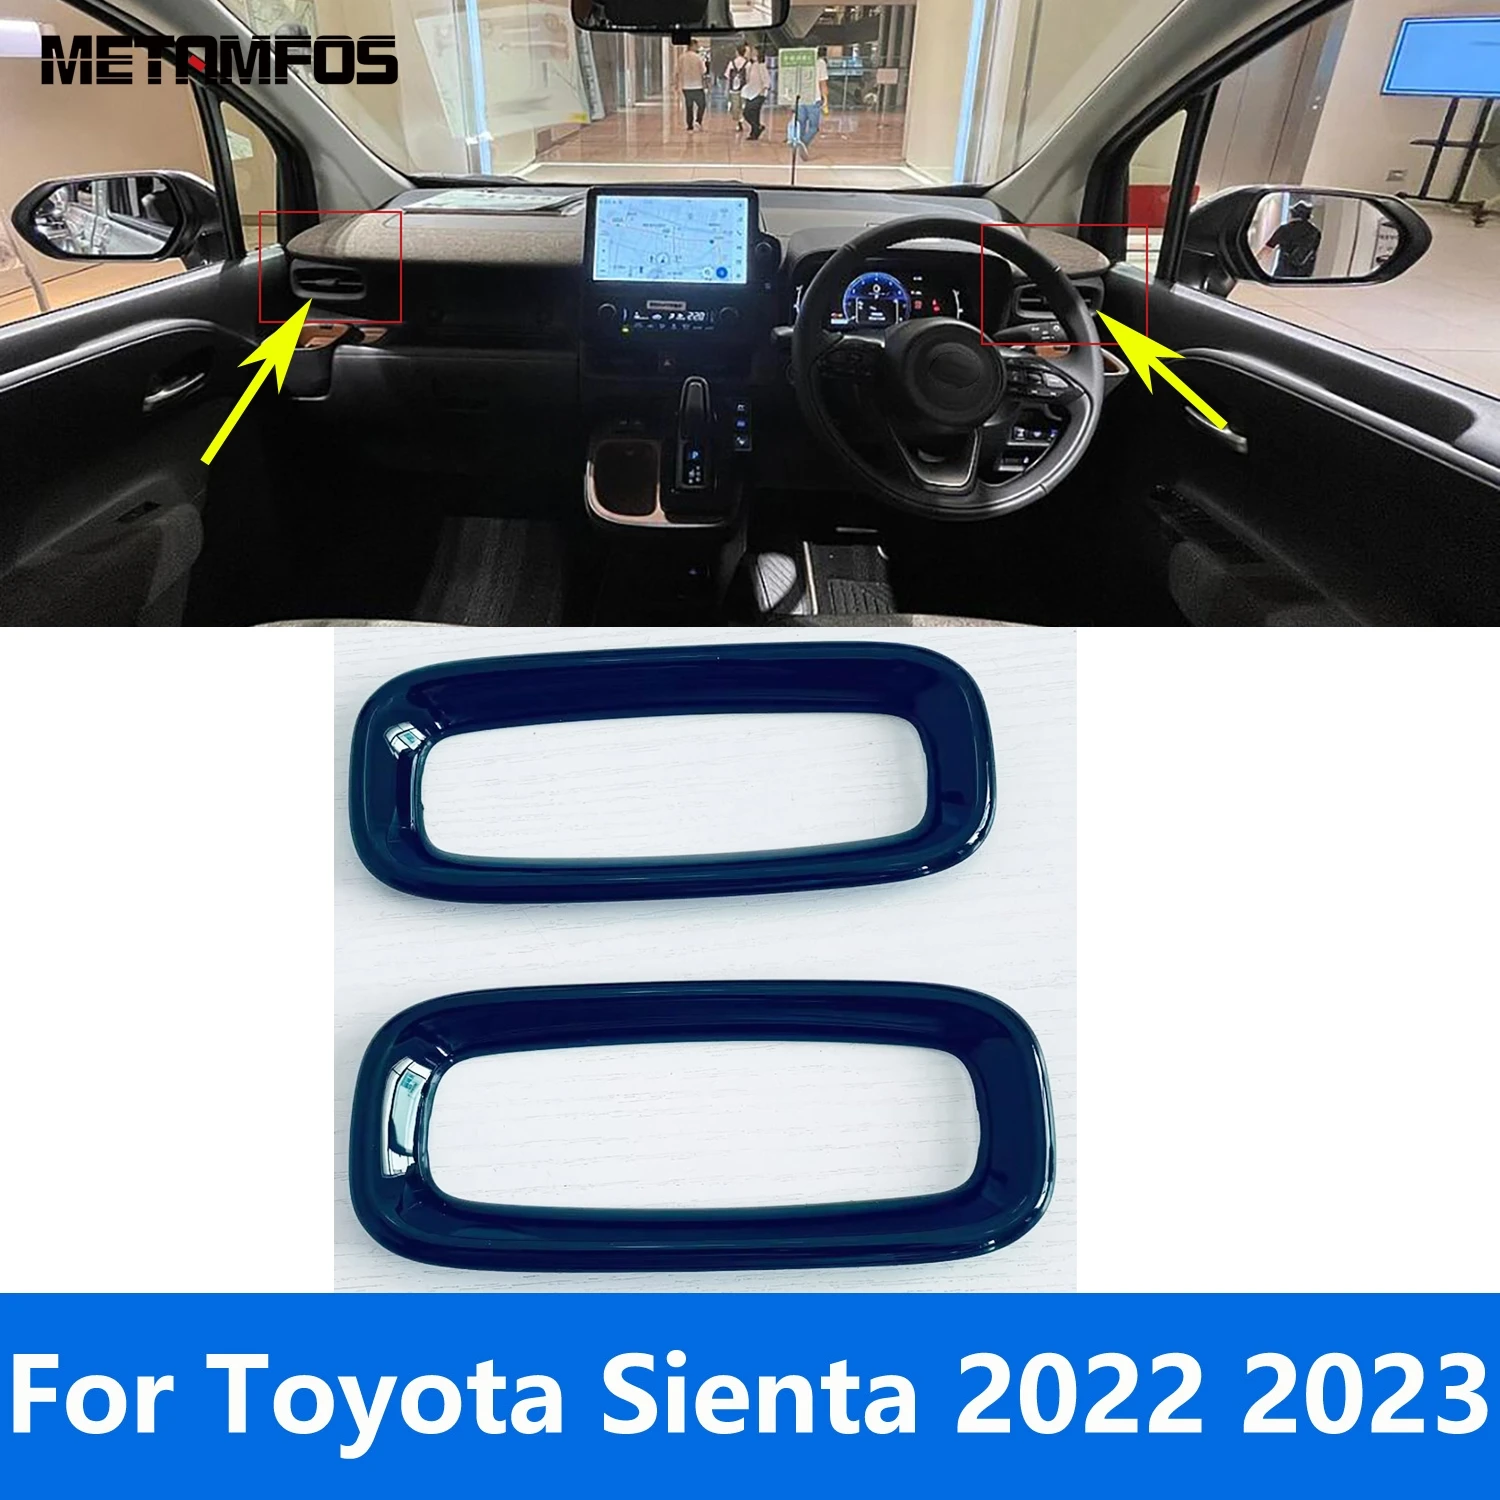 

Для Toyota Sienta 2022 2023 матовая боковая Передняя Крышка Кондиционера вентиляционного отверстия переменного тока отделка рамка стикер ободок аксессуары для стайлинга автомобиля